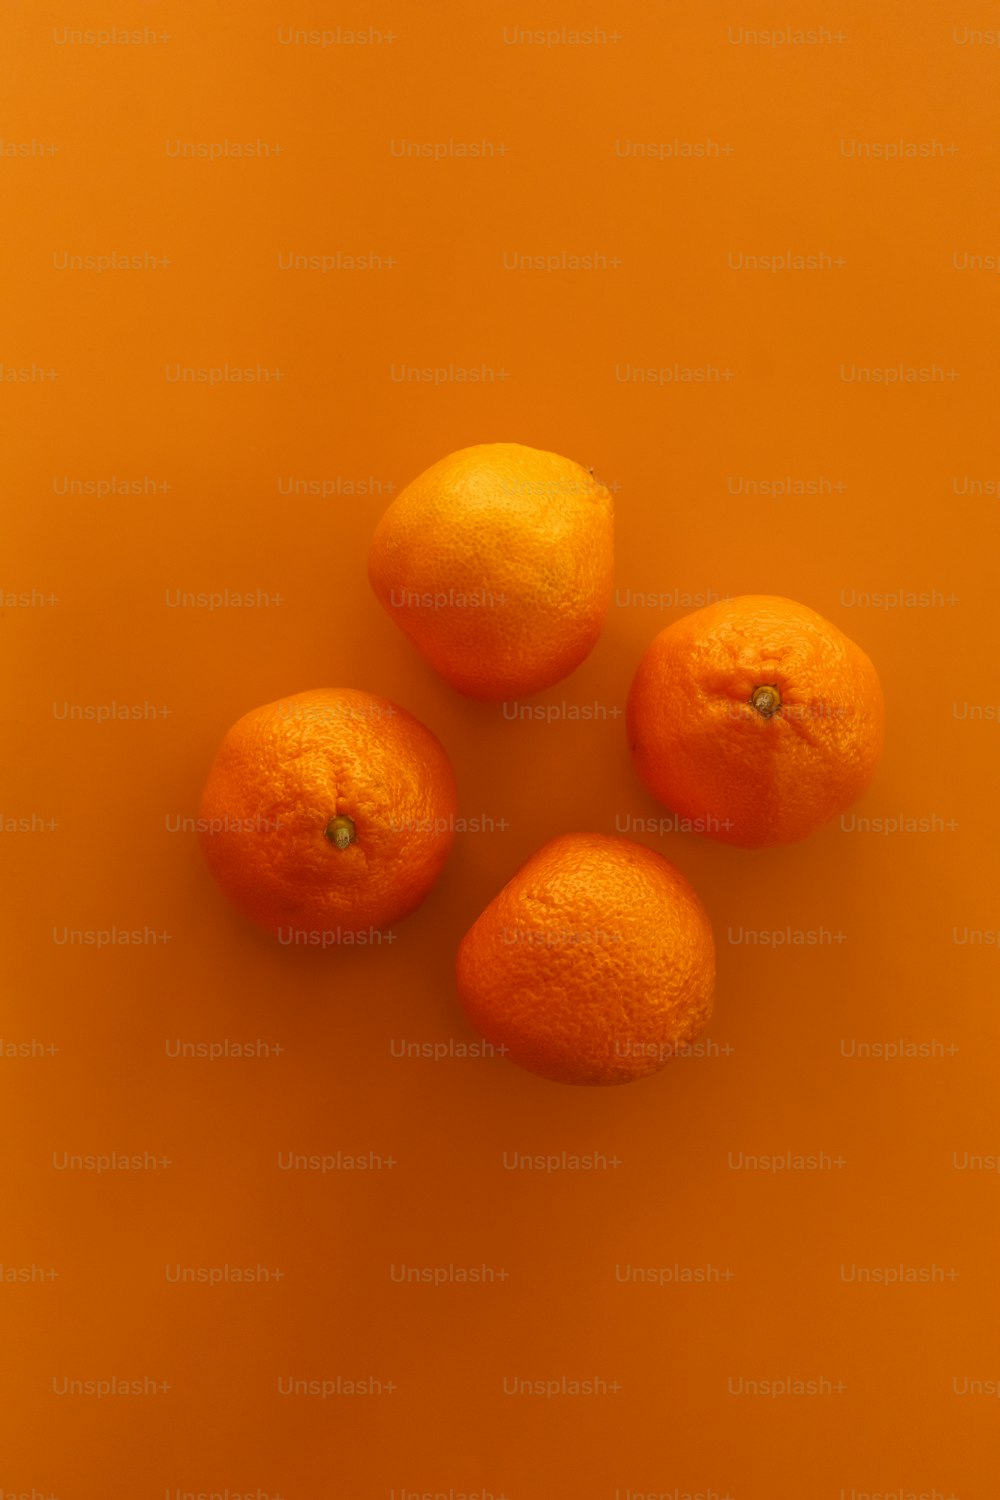 quatre oranges assises sur une surface orange